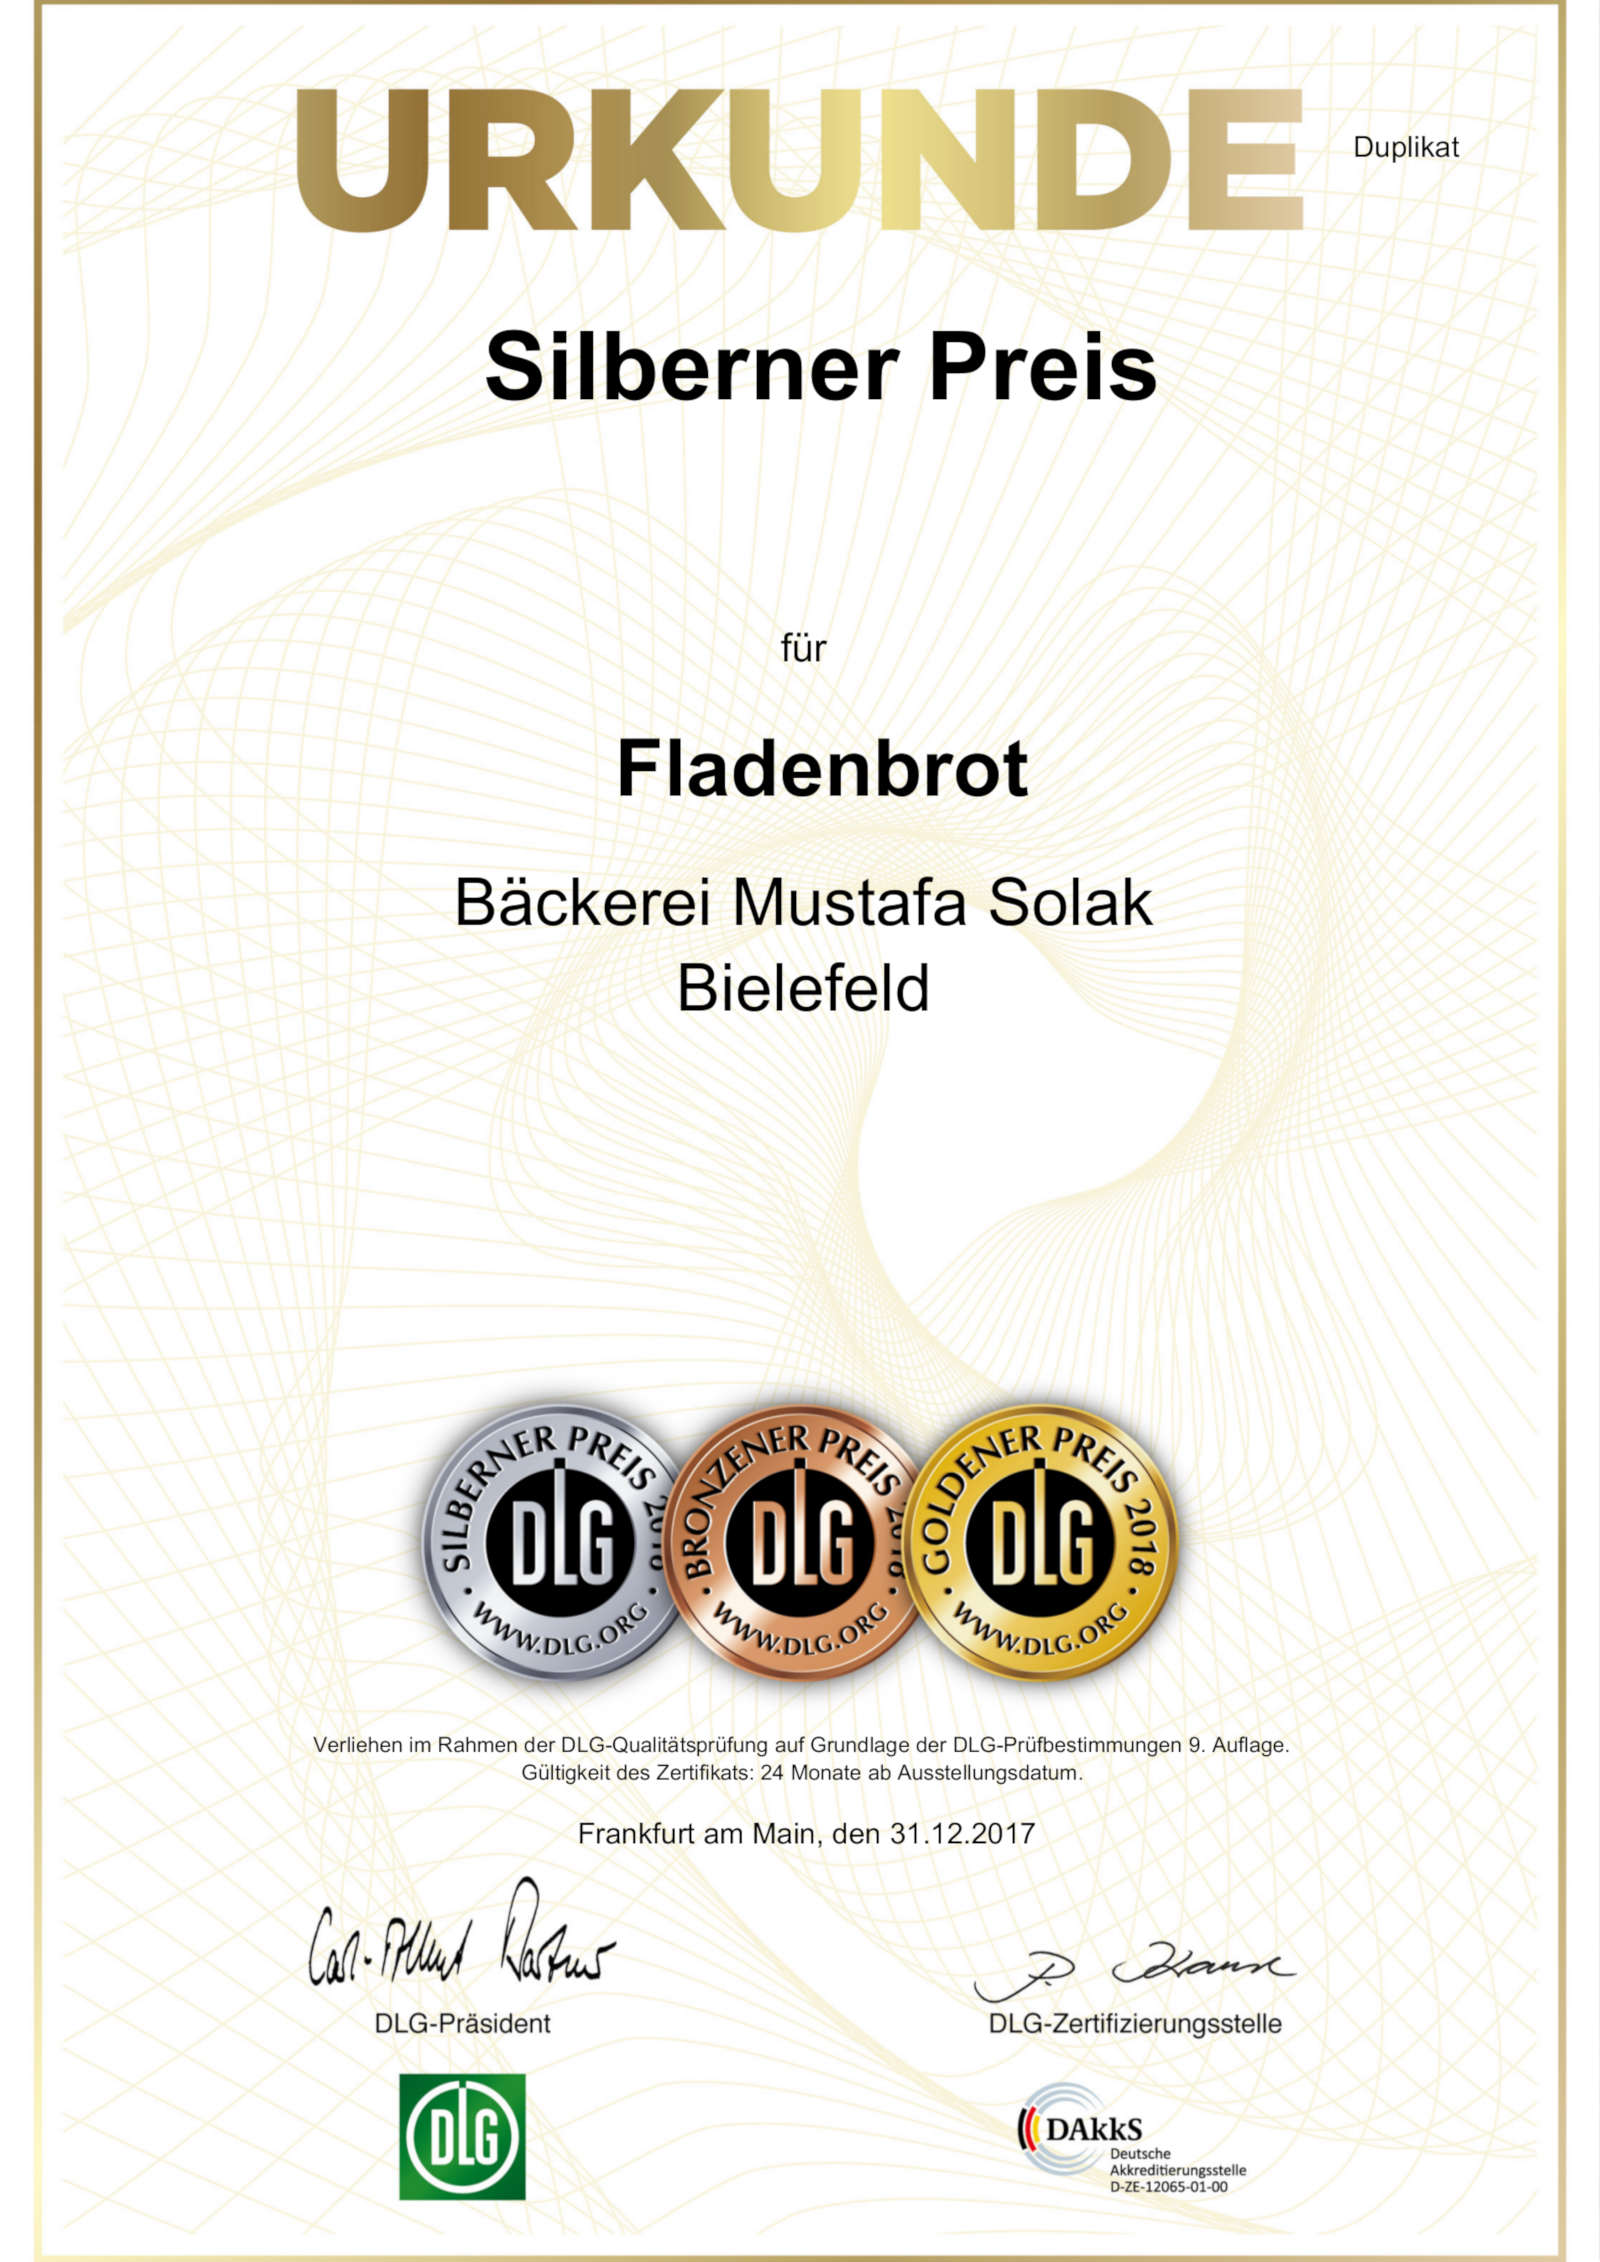 DLG Urkunde/Zertifikat: Silberner Preis 2018 | Spitzenqualität für Fladenbrot der Bäckerei Solak in Bielefeld